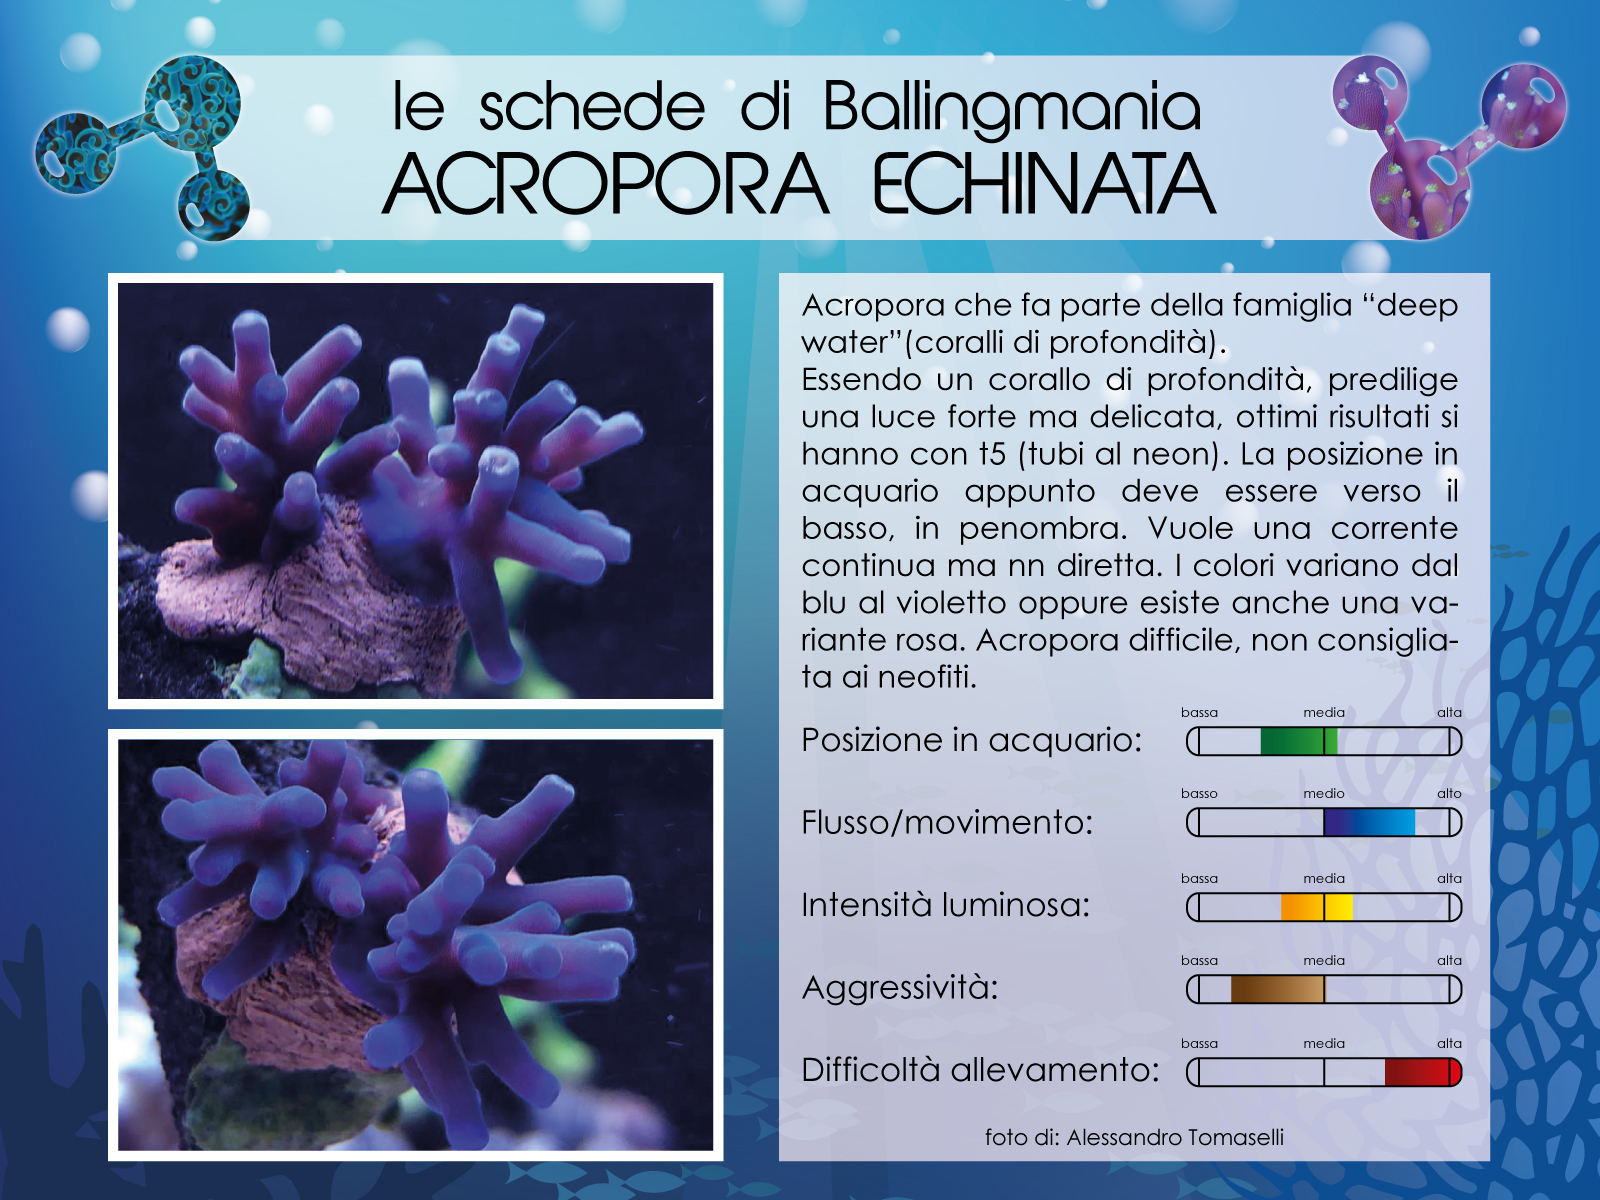 Acropora Echinata